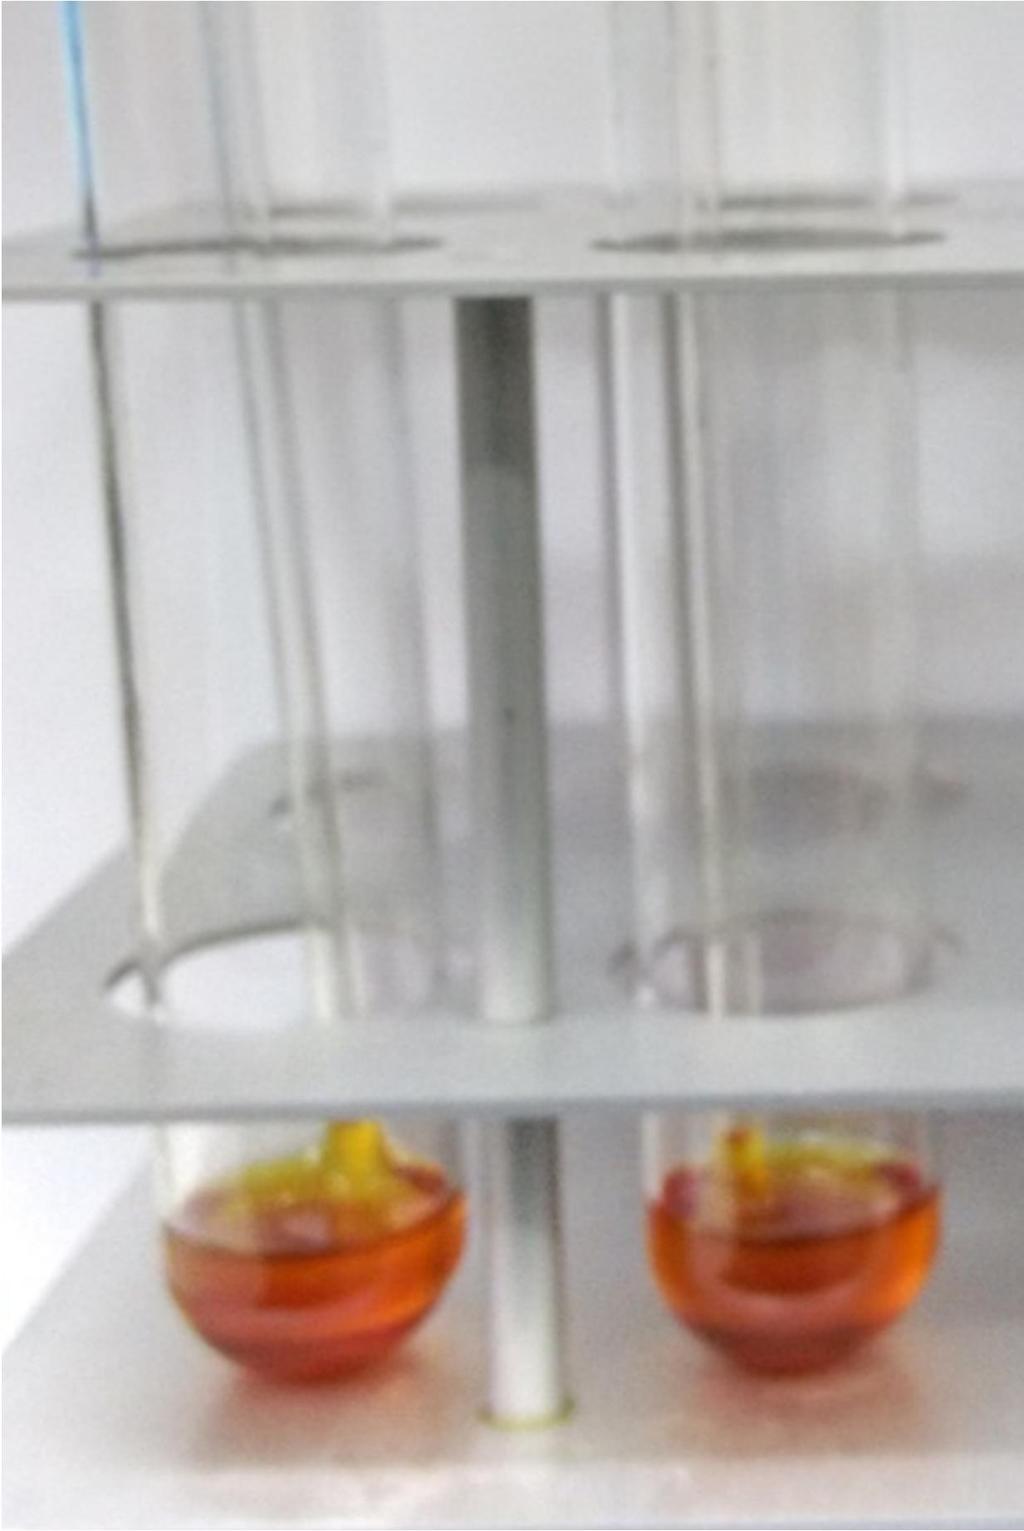 83 Figura 33. Foto do resíduo formado após o ensaio de Rancimat da amostra B20 S10 (realizado em duplicata) no tempo 6 semanas.